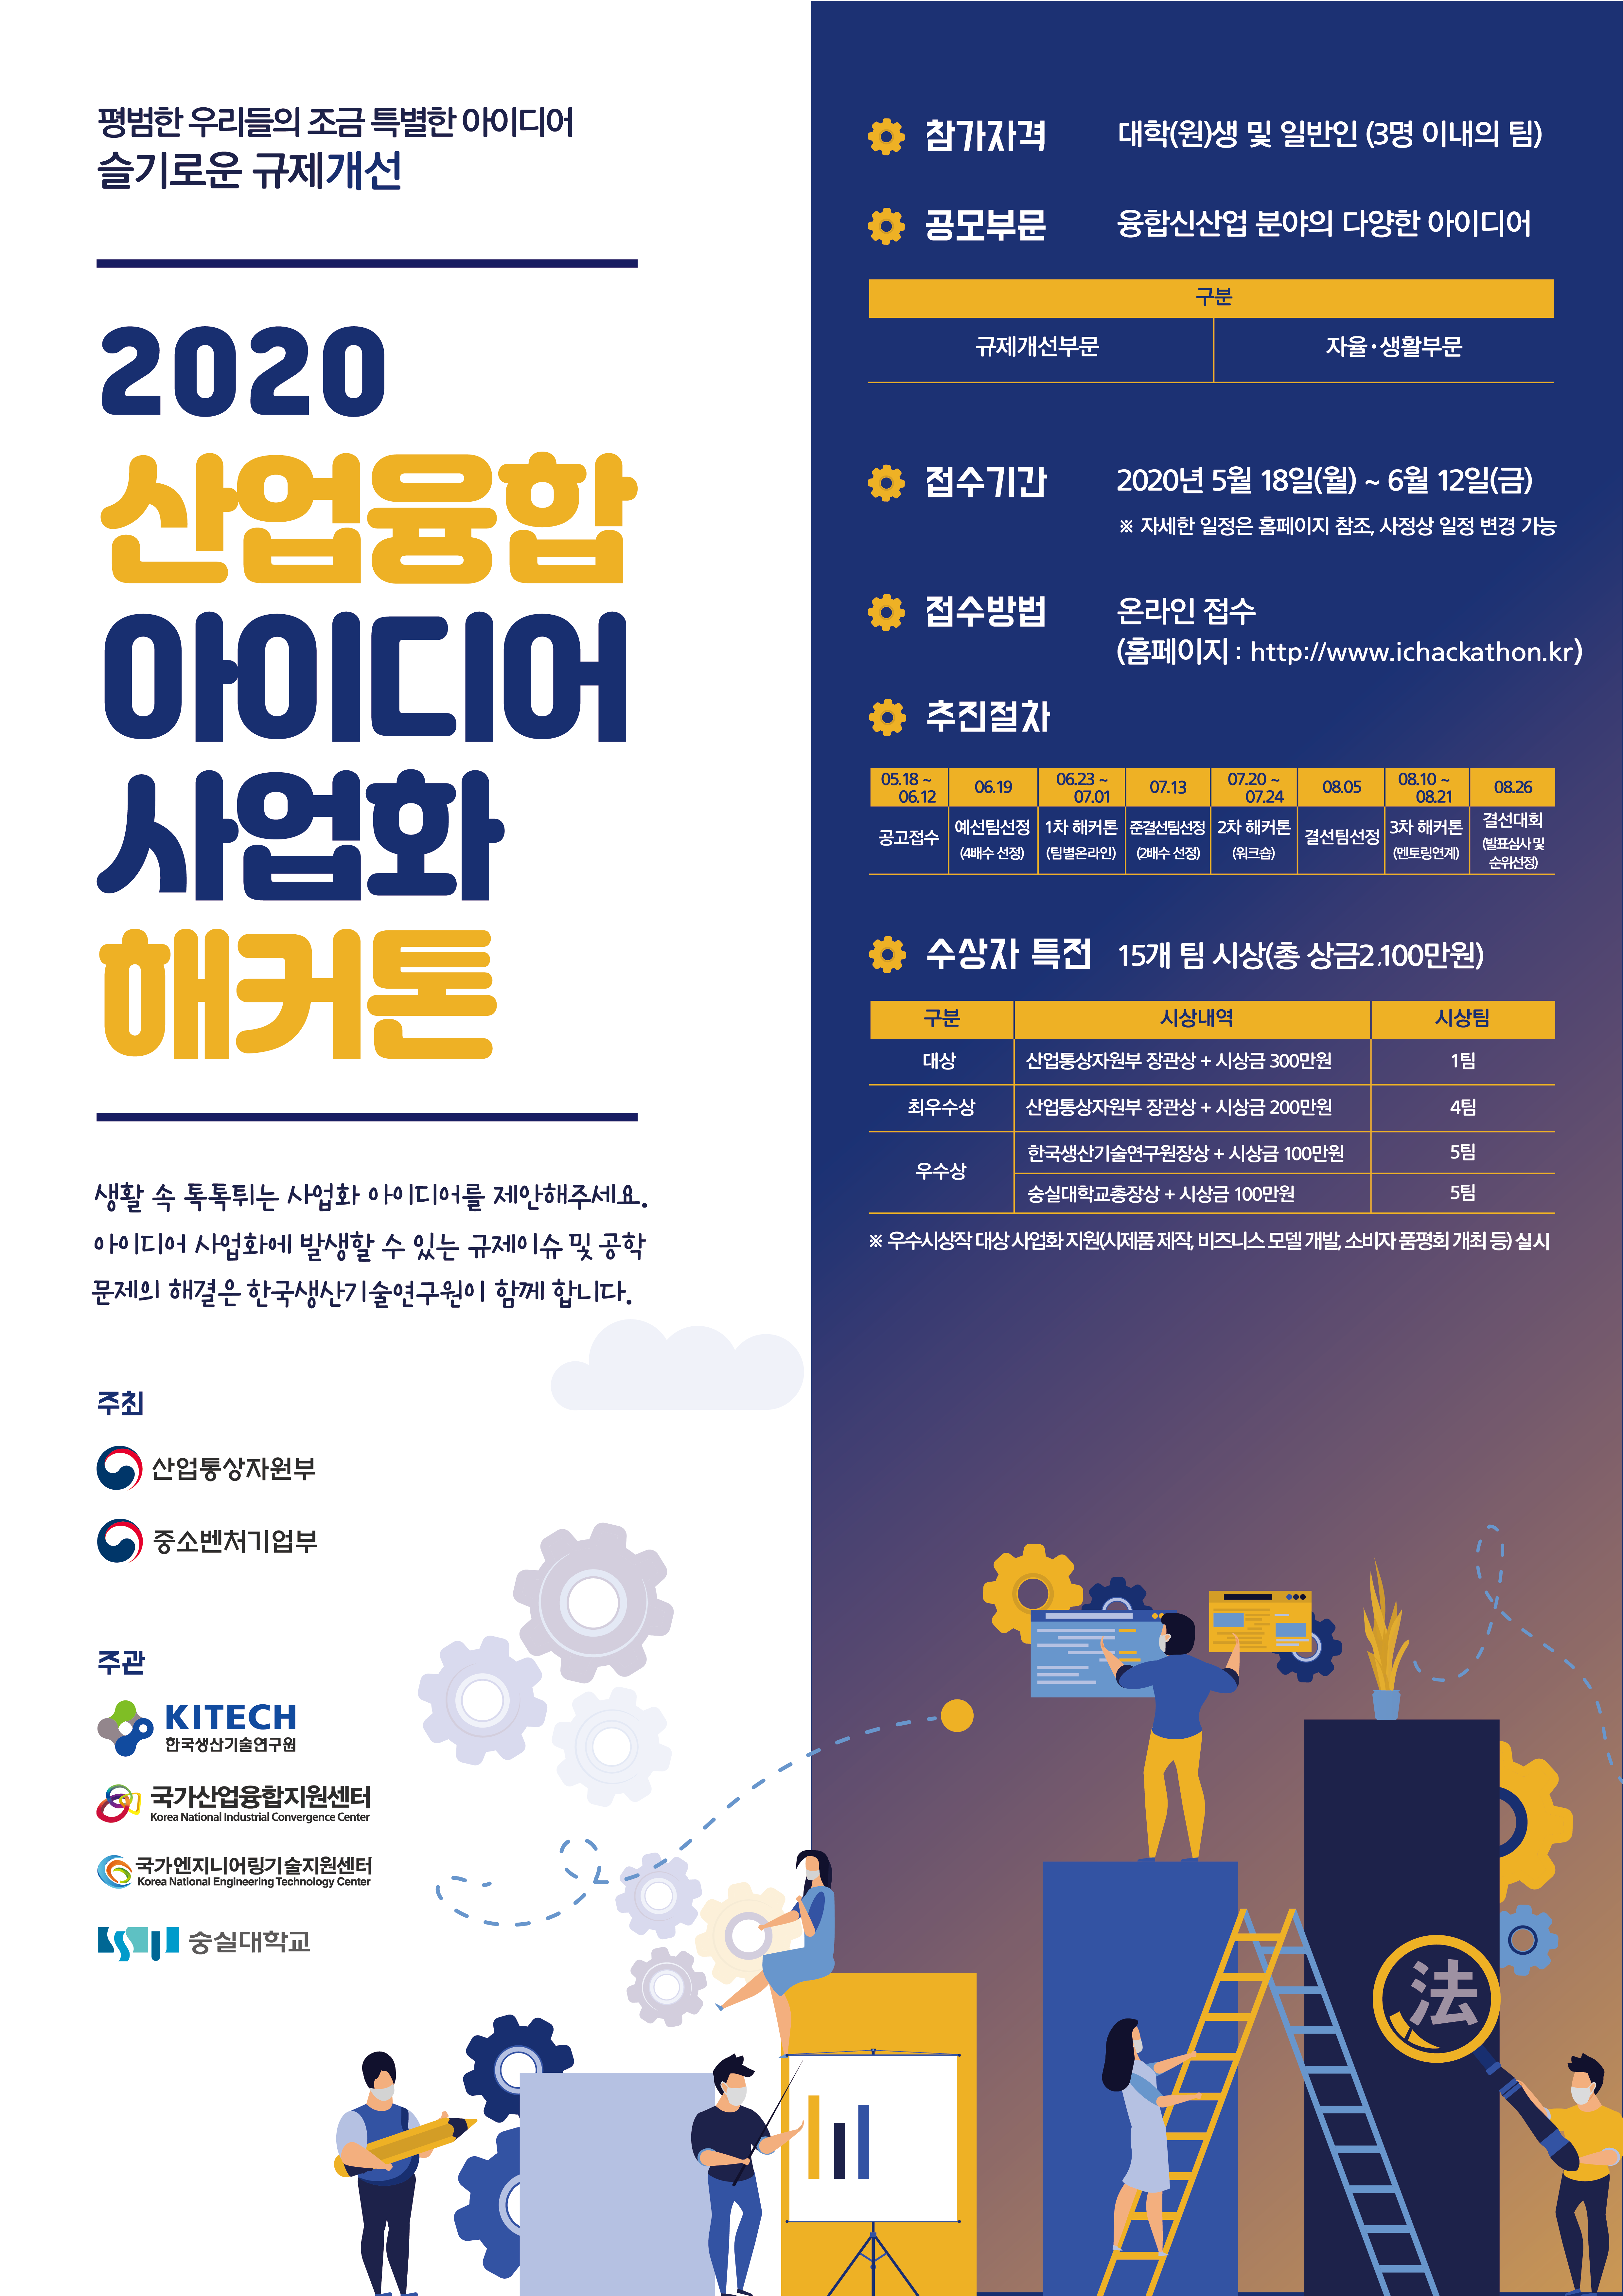 [첨부자료2] 2020 산업융합 아이디어 사업화 해커톤 홍보포스터.png